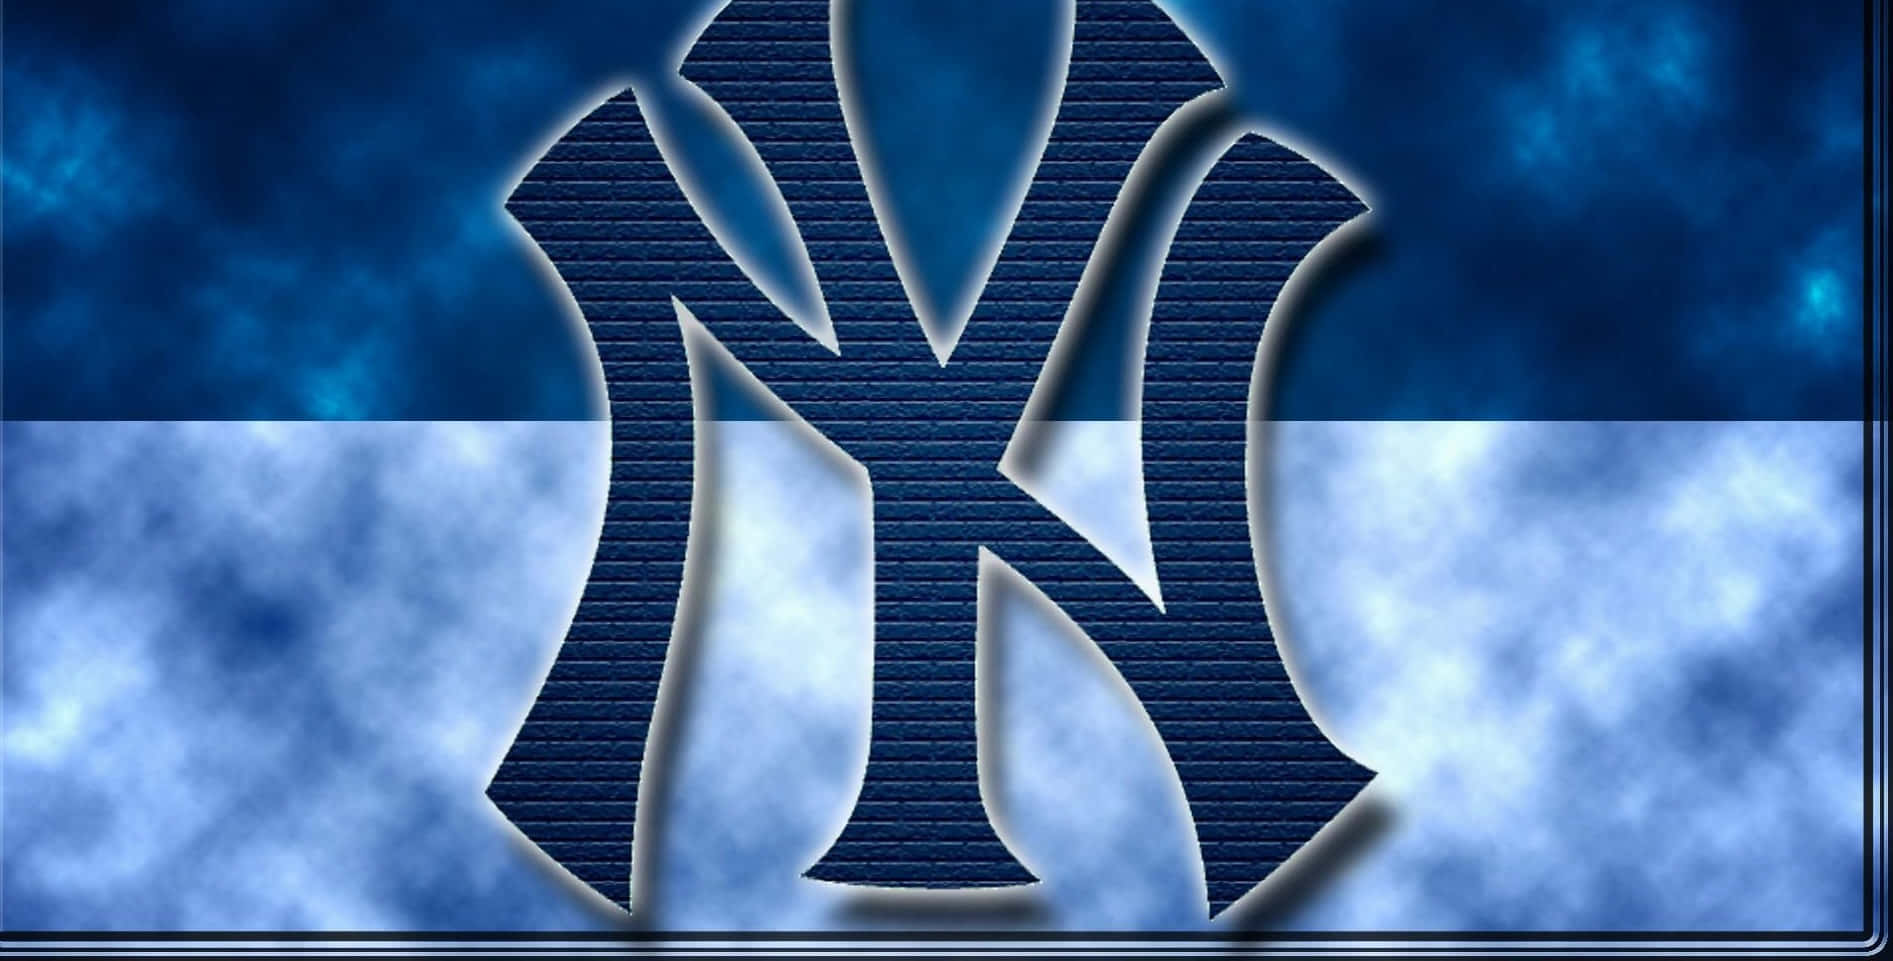 Sfondoper Computer O Cellulare: Il Logo Dei New York Yankees Su Uno Spettacolare Campo Da Baseball